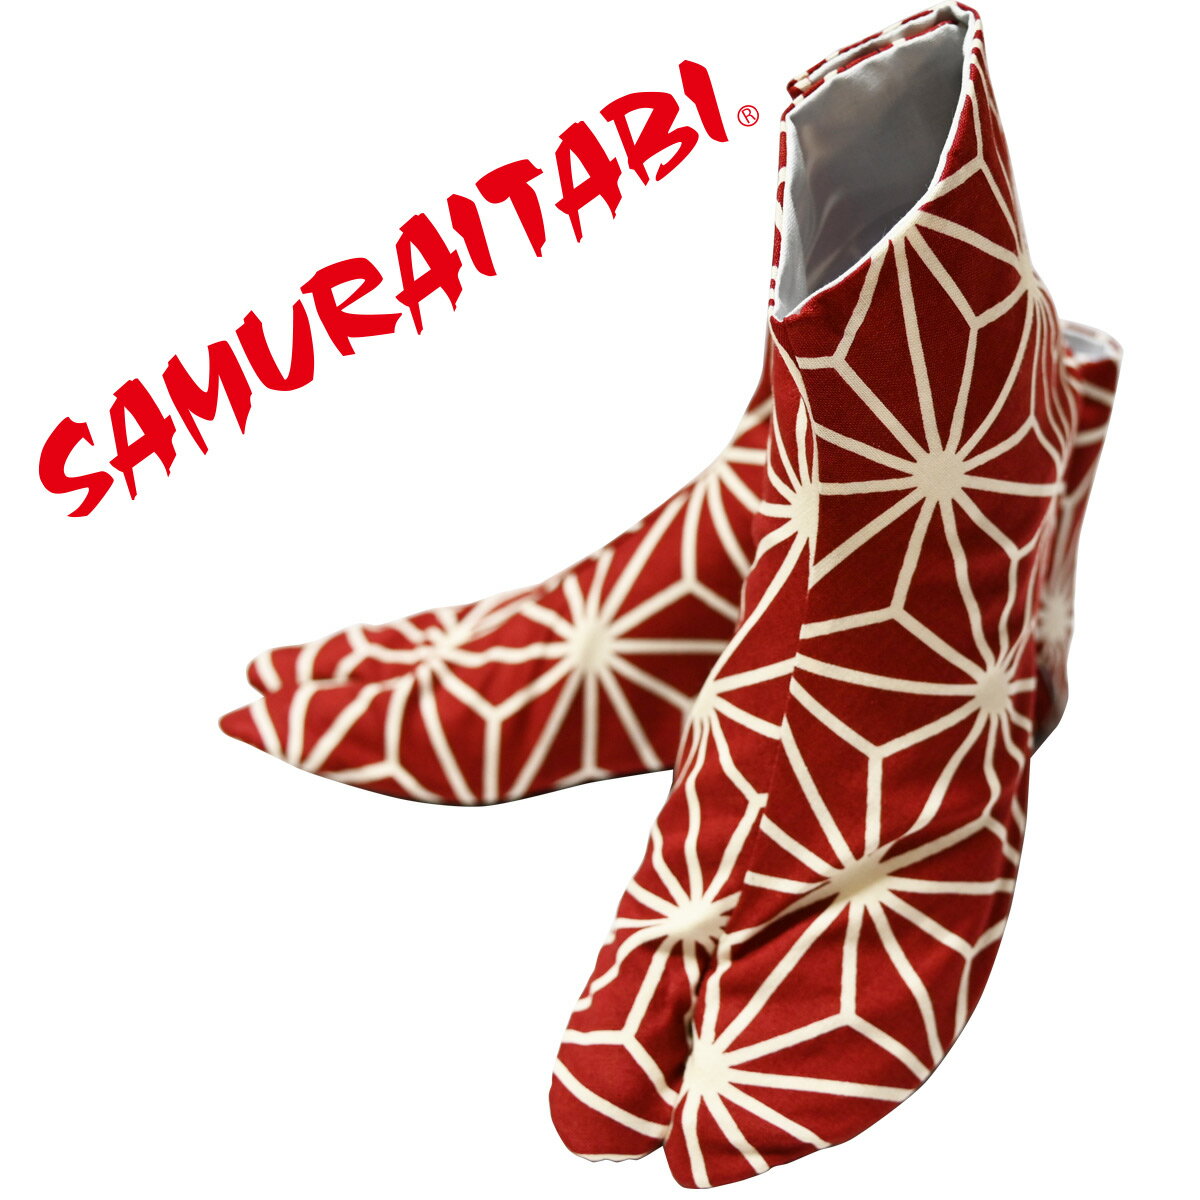 ■ この商品について ■ SAMURAITABI 日本国内の足袋生産量80%をほこる「埼玉県行田市」の足袋職人が、一足づつハンドメイドしています。 職人が、ひとつひとつ心を込めてお作りしています。 ※「日本ギフト大賞」受賞（2016年度・埼玉賞） ※「ふるさと名品オブ・ザ・イヤー地方創生賞」受賞（2017年度） ■商品の特徴■ ご自分で履くだけでなく贈り物にもぴったり。 ■商品の特徴2■ 老若男女お楽しみ頂けます。 サイズが豊富なのでお子様からご年配の方までお楽しみ頂けます。 ■素材■ 綿100％(表) 綿100％(裏) 綿100％(底) ■サイズ■ 14/15/16/17/18/19/20/21/ 22/22.5/23/23.5/24/24.5/25/25.5/ 26/26.5/27/27.5/28/28.5/29/30cm ※複数店舗で在庫を共有しているためタイミング次第ではすぐにご用意出来ない場合がございます。 在庫の無いサイズは受注後に作製いたしますので2か月程度かかります。職人が一足ずつ手作りしております。 ※数量によっては受注生産となり、約2か月お時間をいただきます。お急ぎの場合は事前に在庫をお問い合わせ下さい。